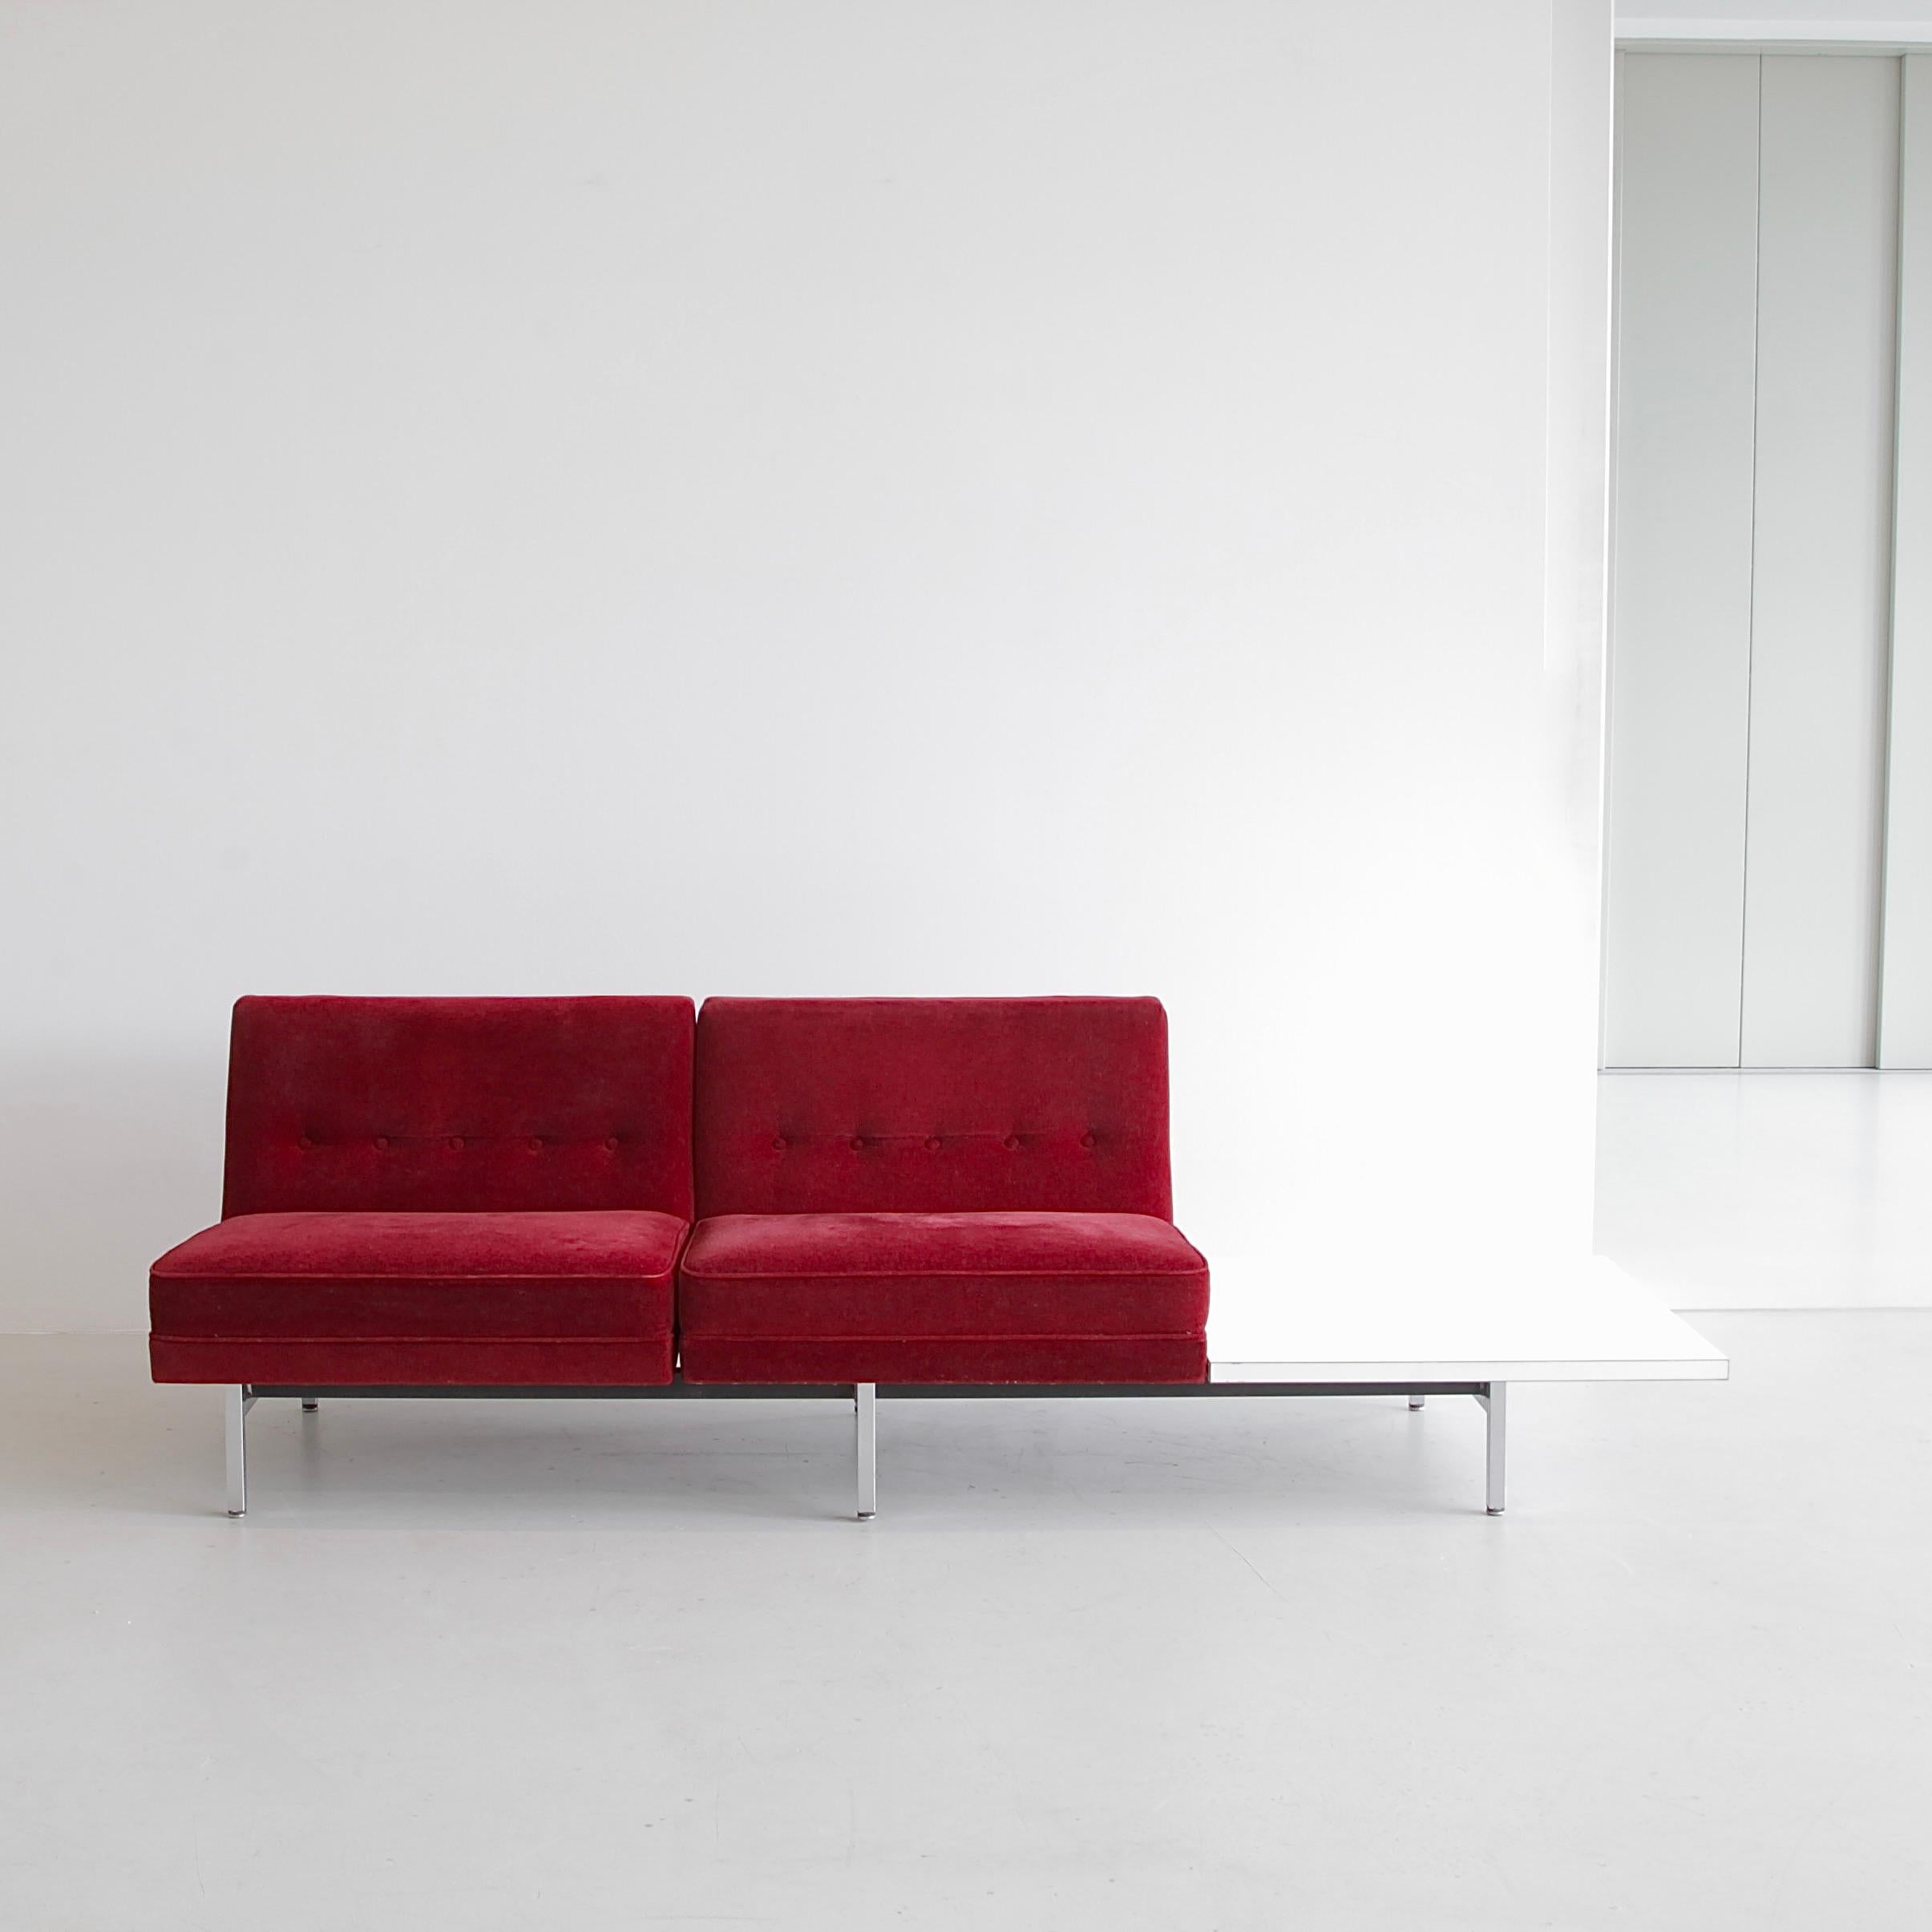 Zweisitziges Sofa, entworfen von George Nelson. U.S.A., Herman Miller, 1960er Jahre.

Modulares Sofa von George Nelson mit einer starken Metallstruktur und verchromten Füßen. Zwei mit rotem Mohair gepolsterte Vintage-Sitze mit geknöpften